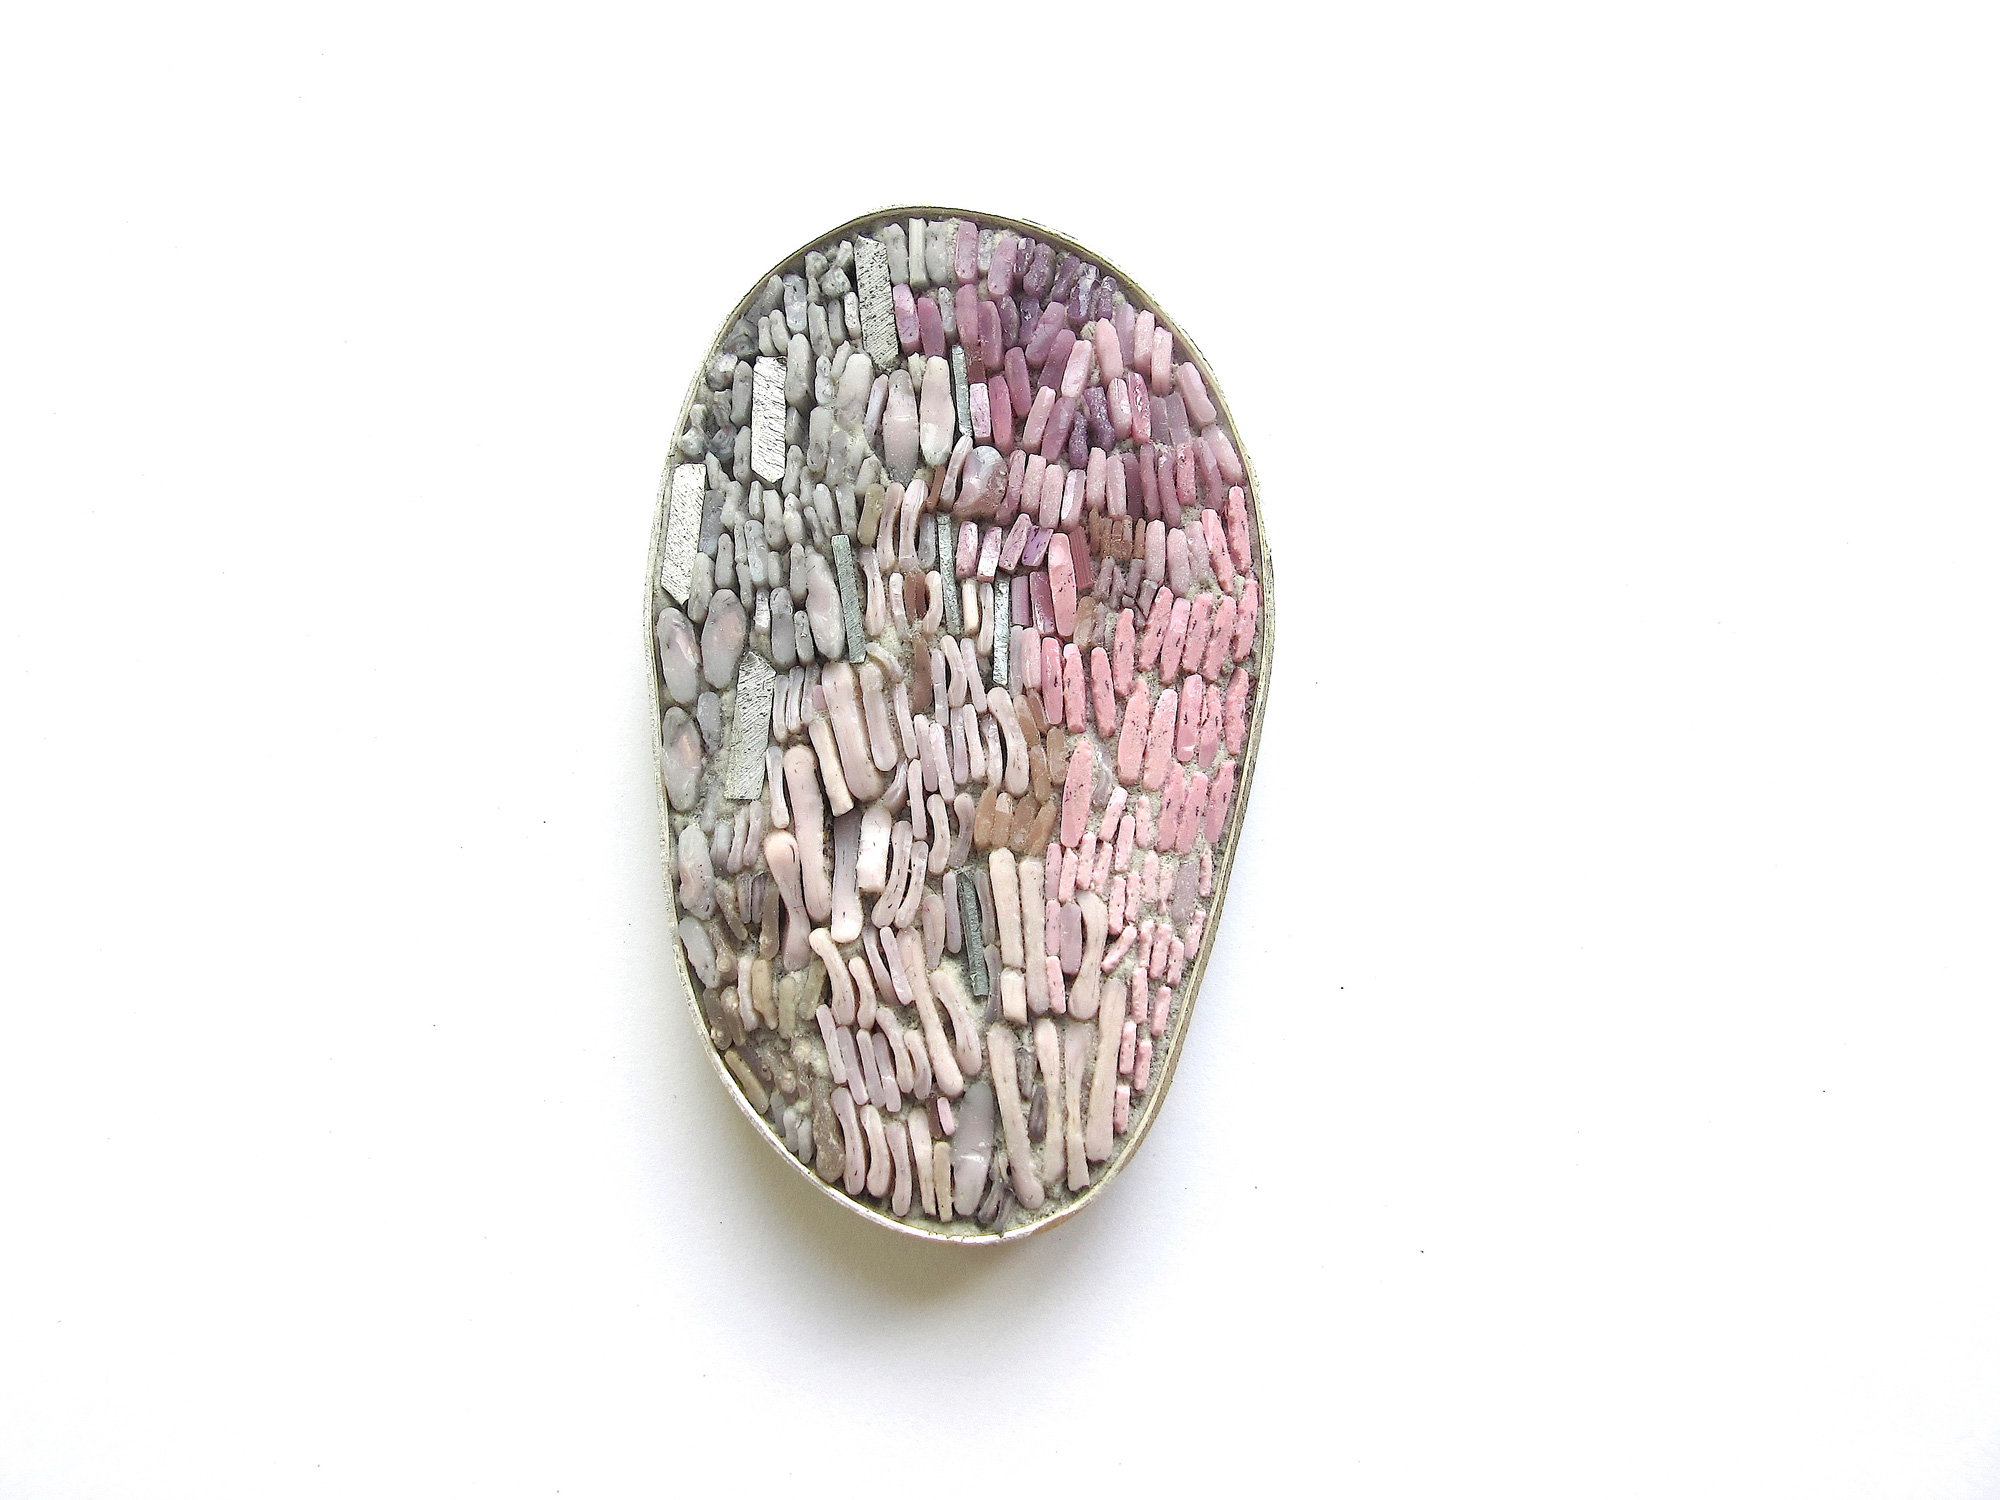 Broche rose - Argent, micromosaïques, aluminium - 6 x 3 cm - 2018 - Photo : ICatelier